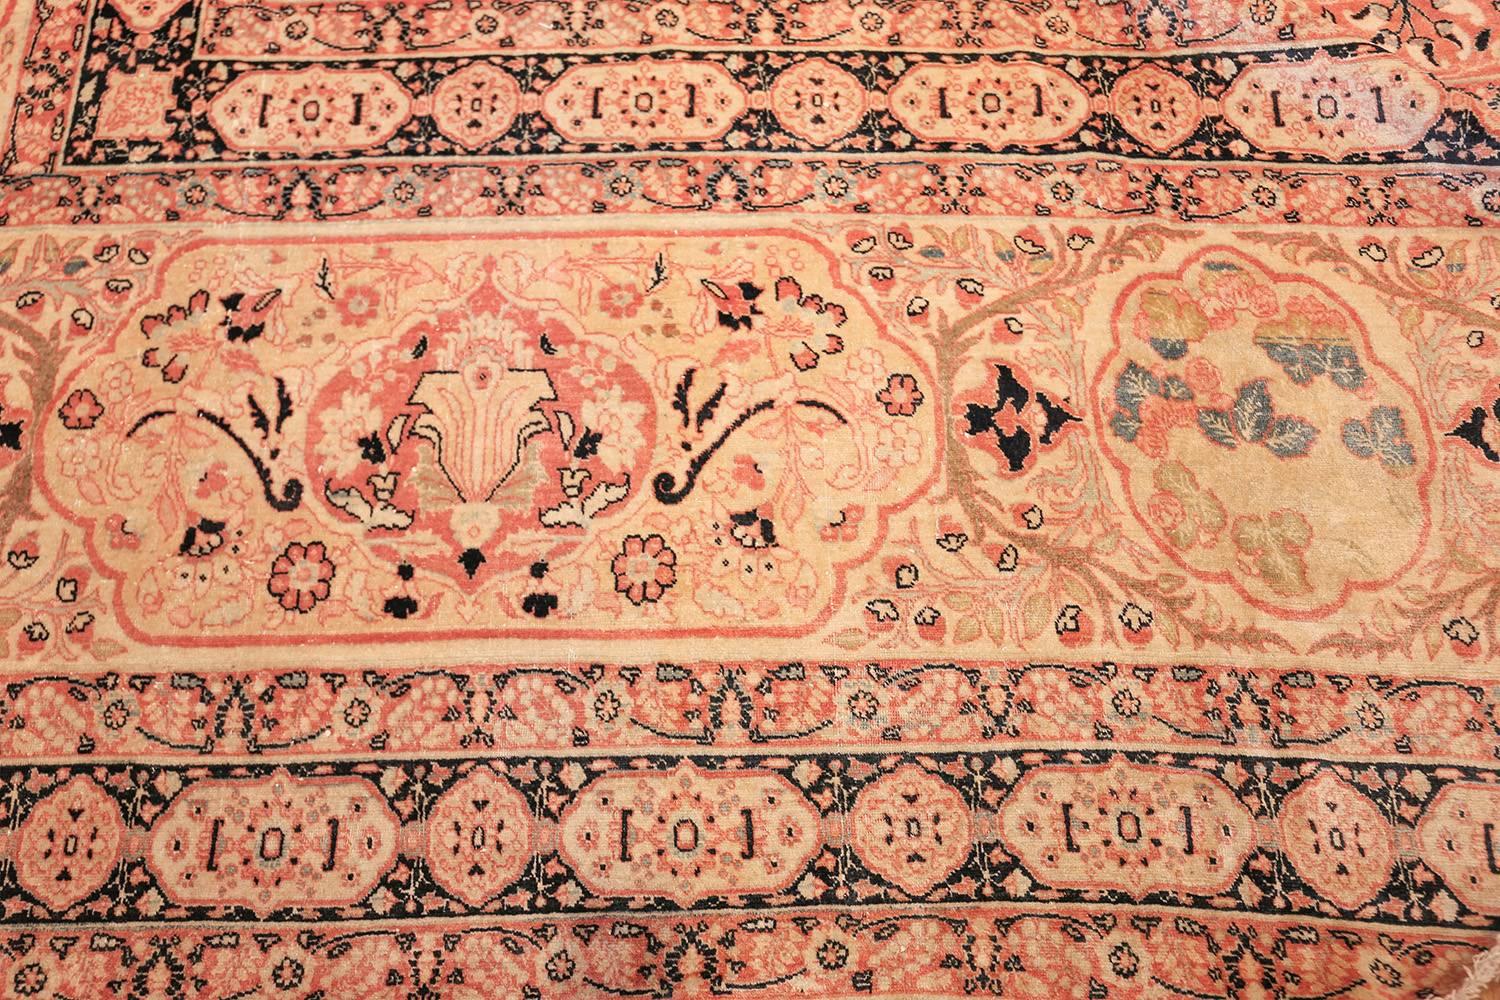 Fein gewebter antiker übergroßer persischer Teppich aus Täbris von Hadschi Jalili, Herkunftsland / Teppichart: Persische Teppiche, um 1900. Größe: 16 ft x 25 ft 4 in (4,88 m x 7,72 m)

Man braucht nur einen Blick auf diesen wunderschönen